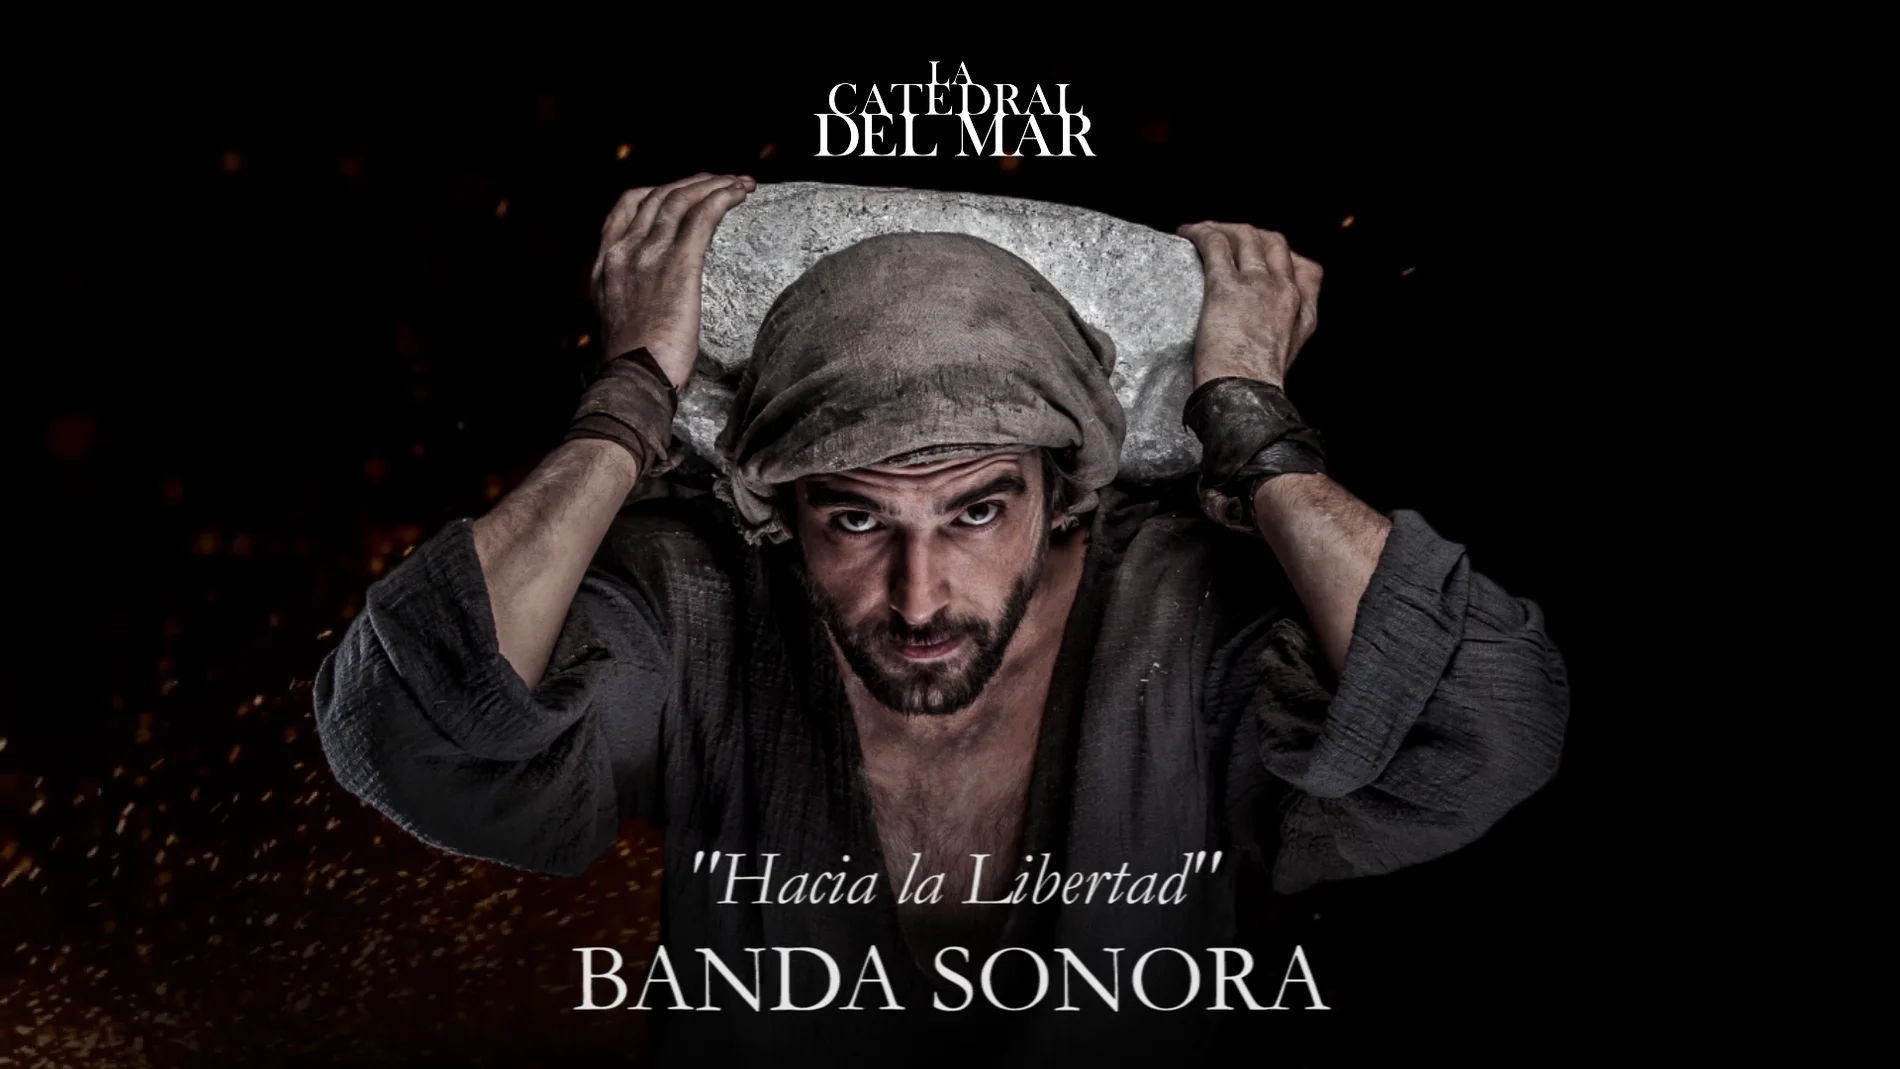 Hacia la libertad - Banda sonora de 'La Catedral del Mar'